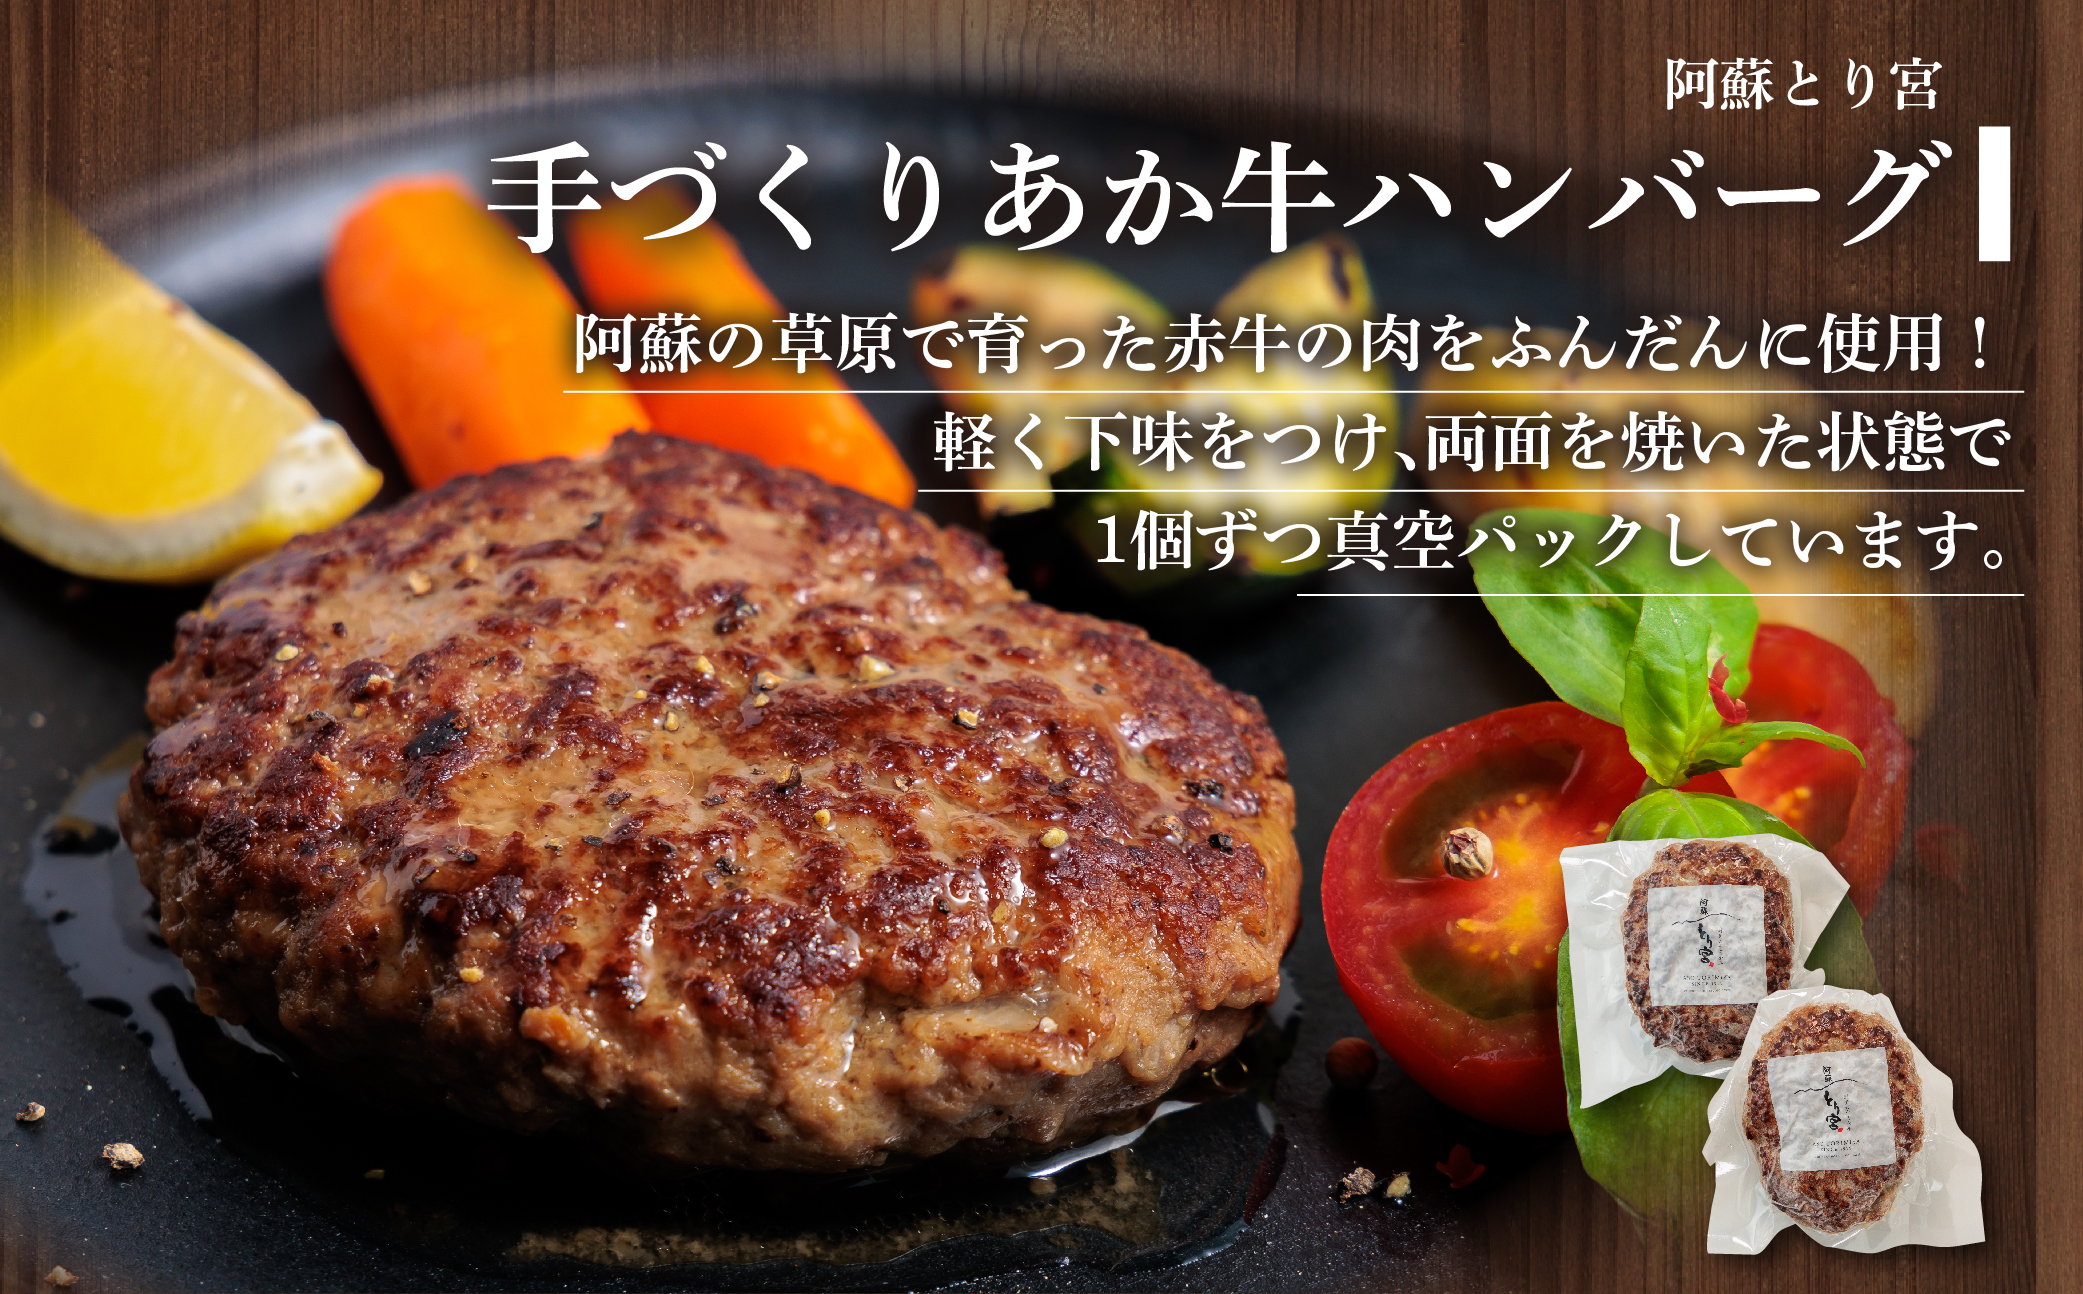 ハンバーグ バラエティーセット 6種類 約1.7kg あか牛 ポーク トマト 煮込み セット 詰め合わせ 食べ比べ 人気 美味しい 熊本 阿蘇